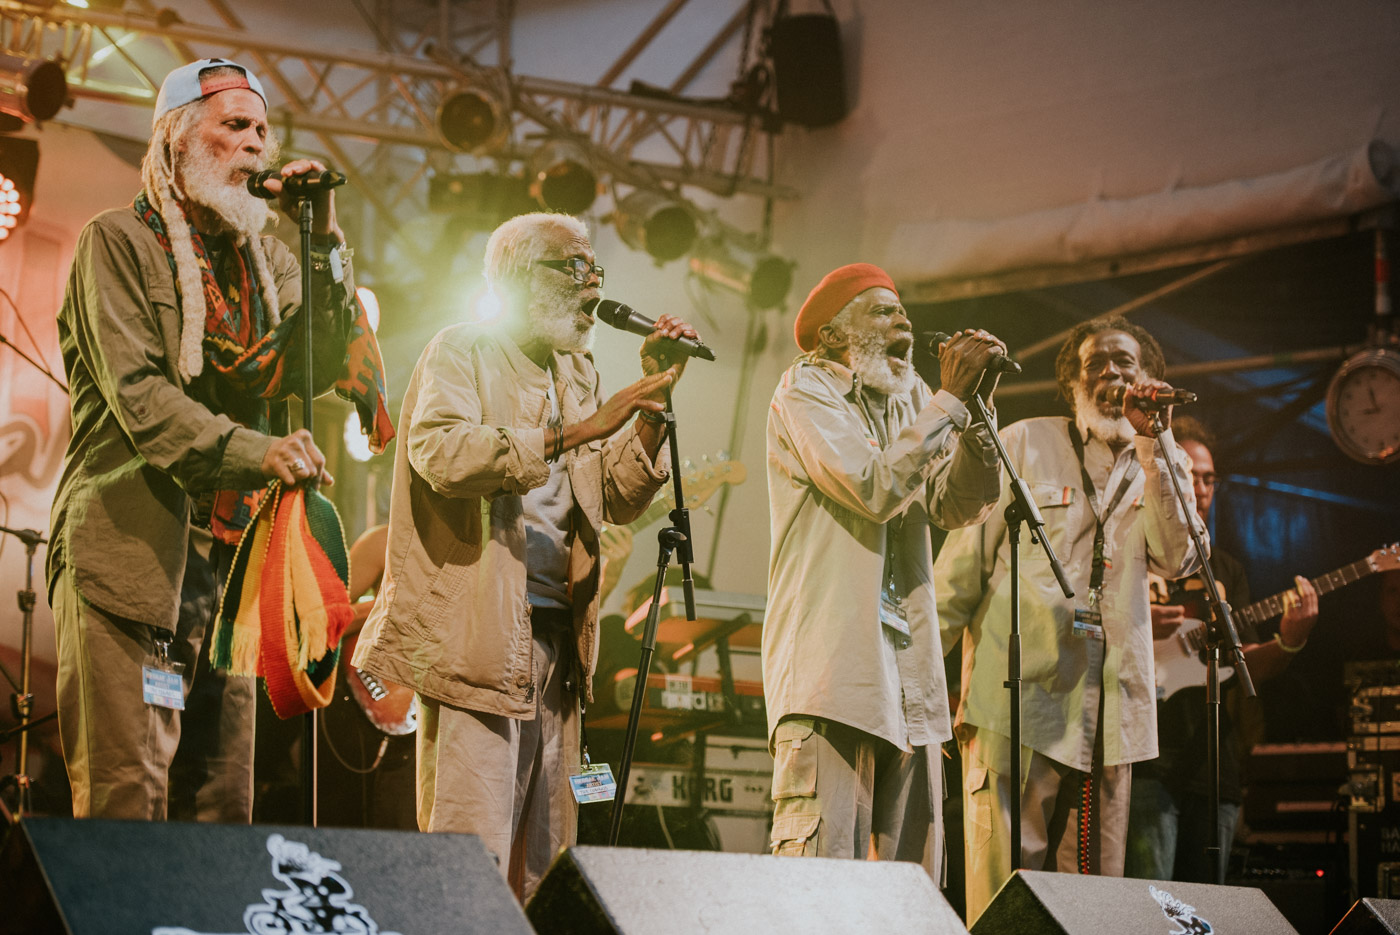 The Congos @ Reggae Jam 2016